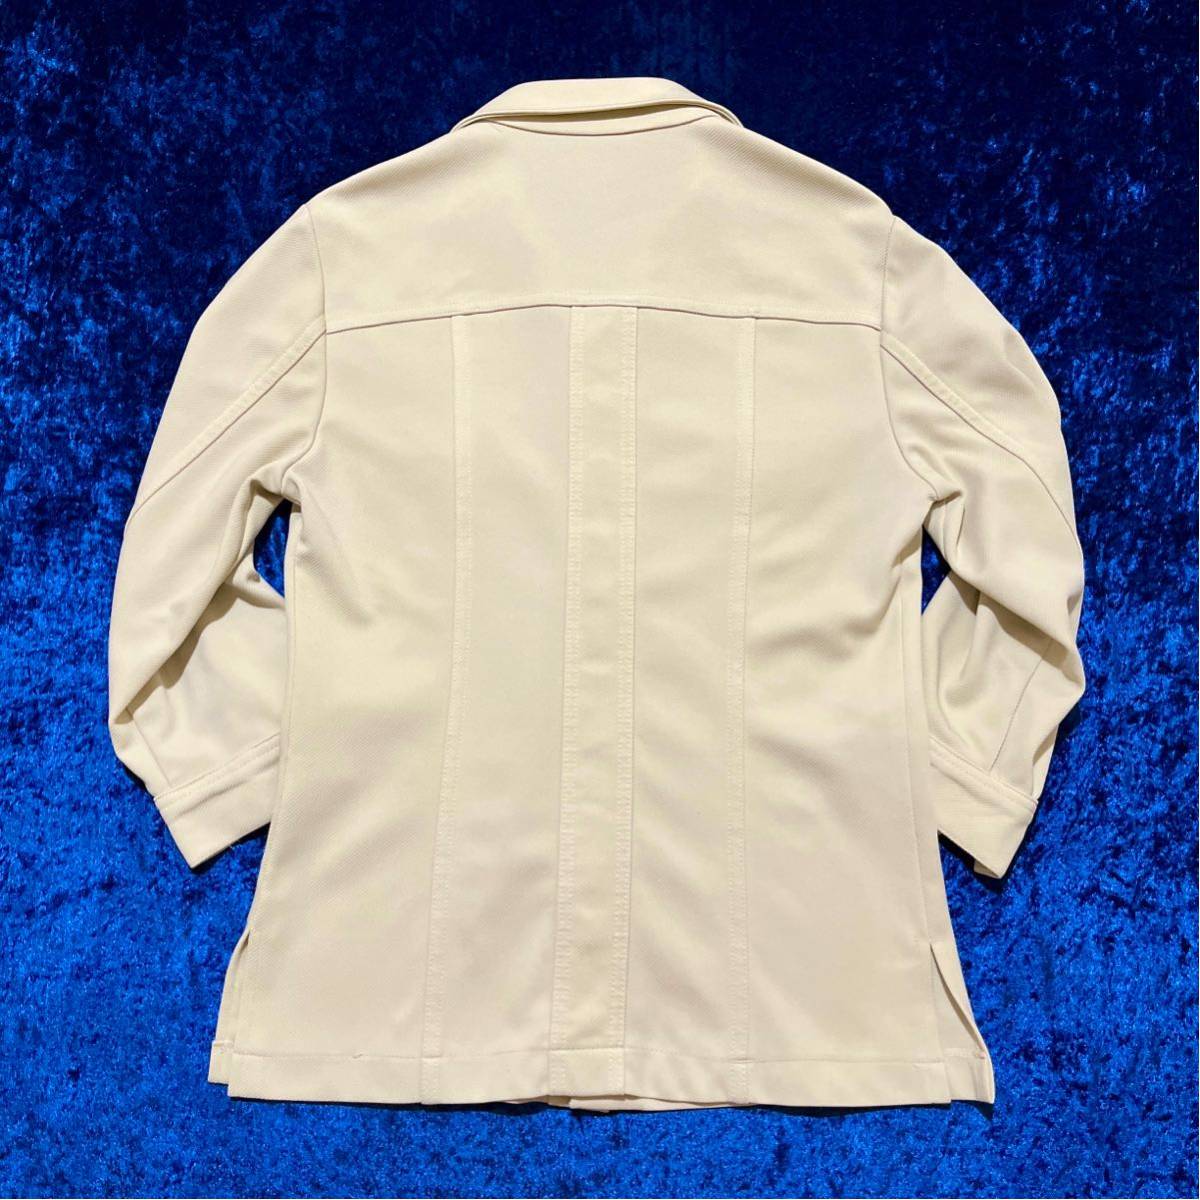 70*s Lee рубашка жакет поиск : б/у одежда Vintage retro 70 годы Made in USA